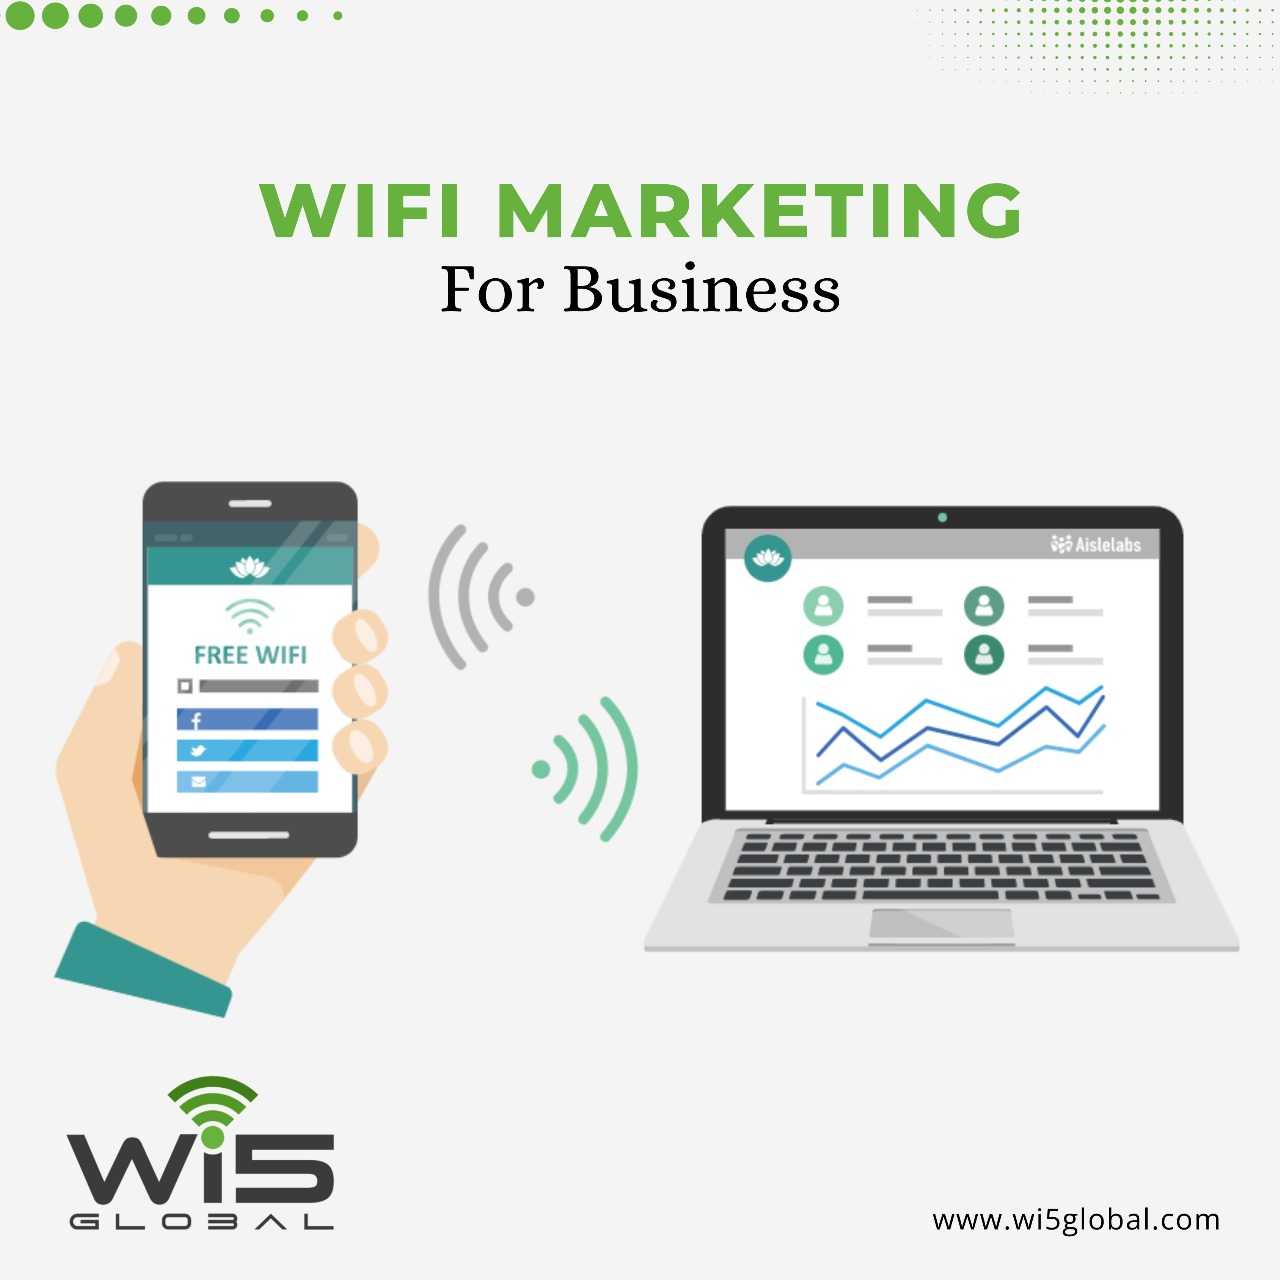 wifi marketing_wi5global